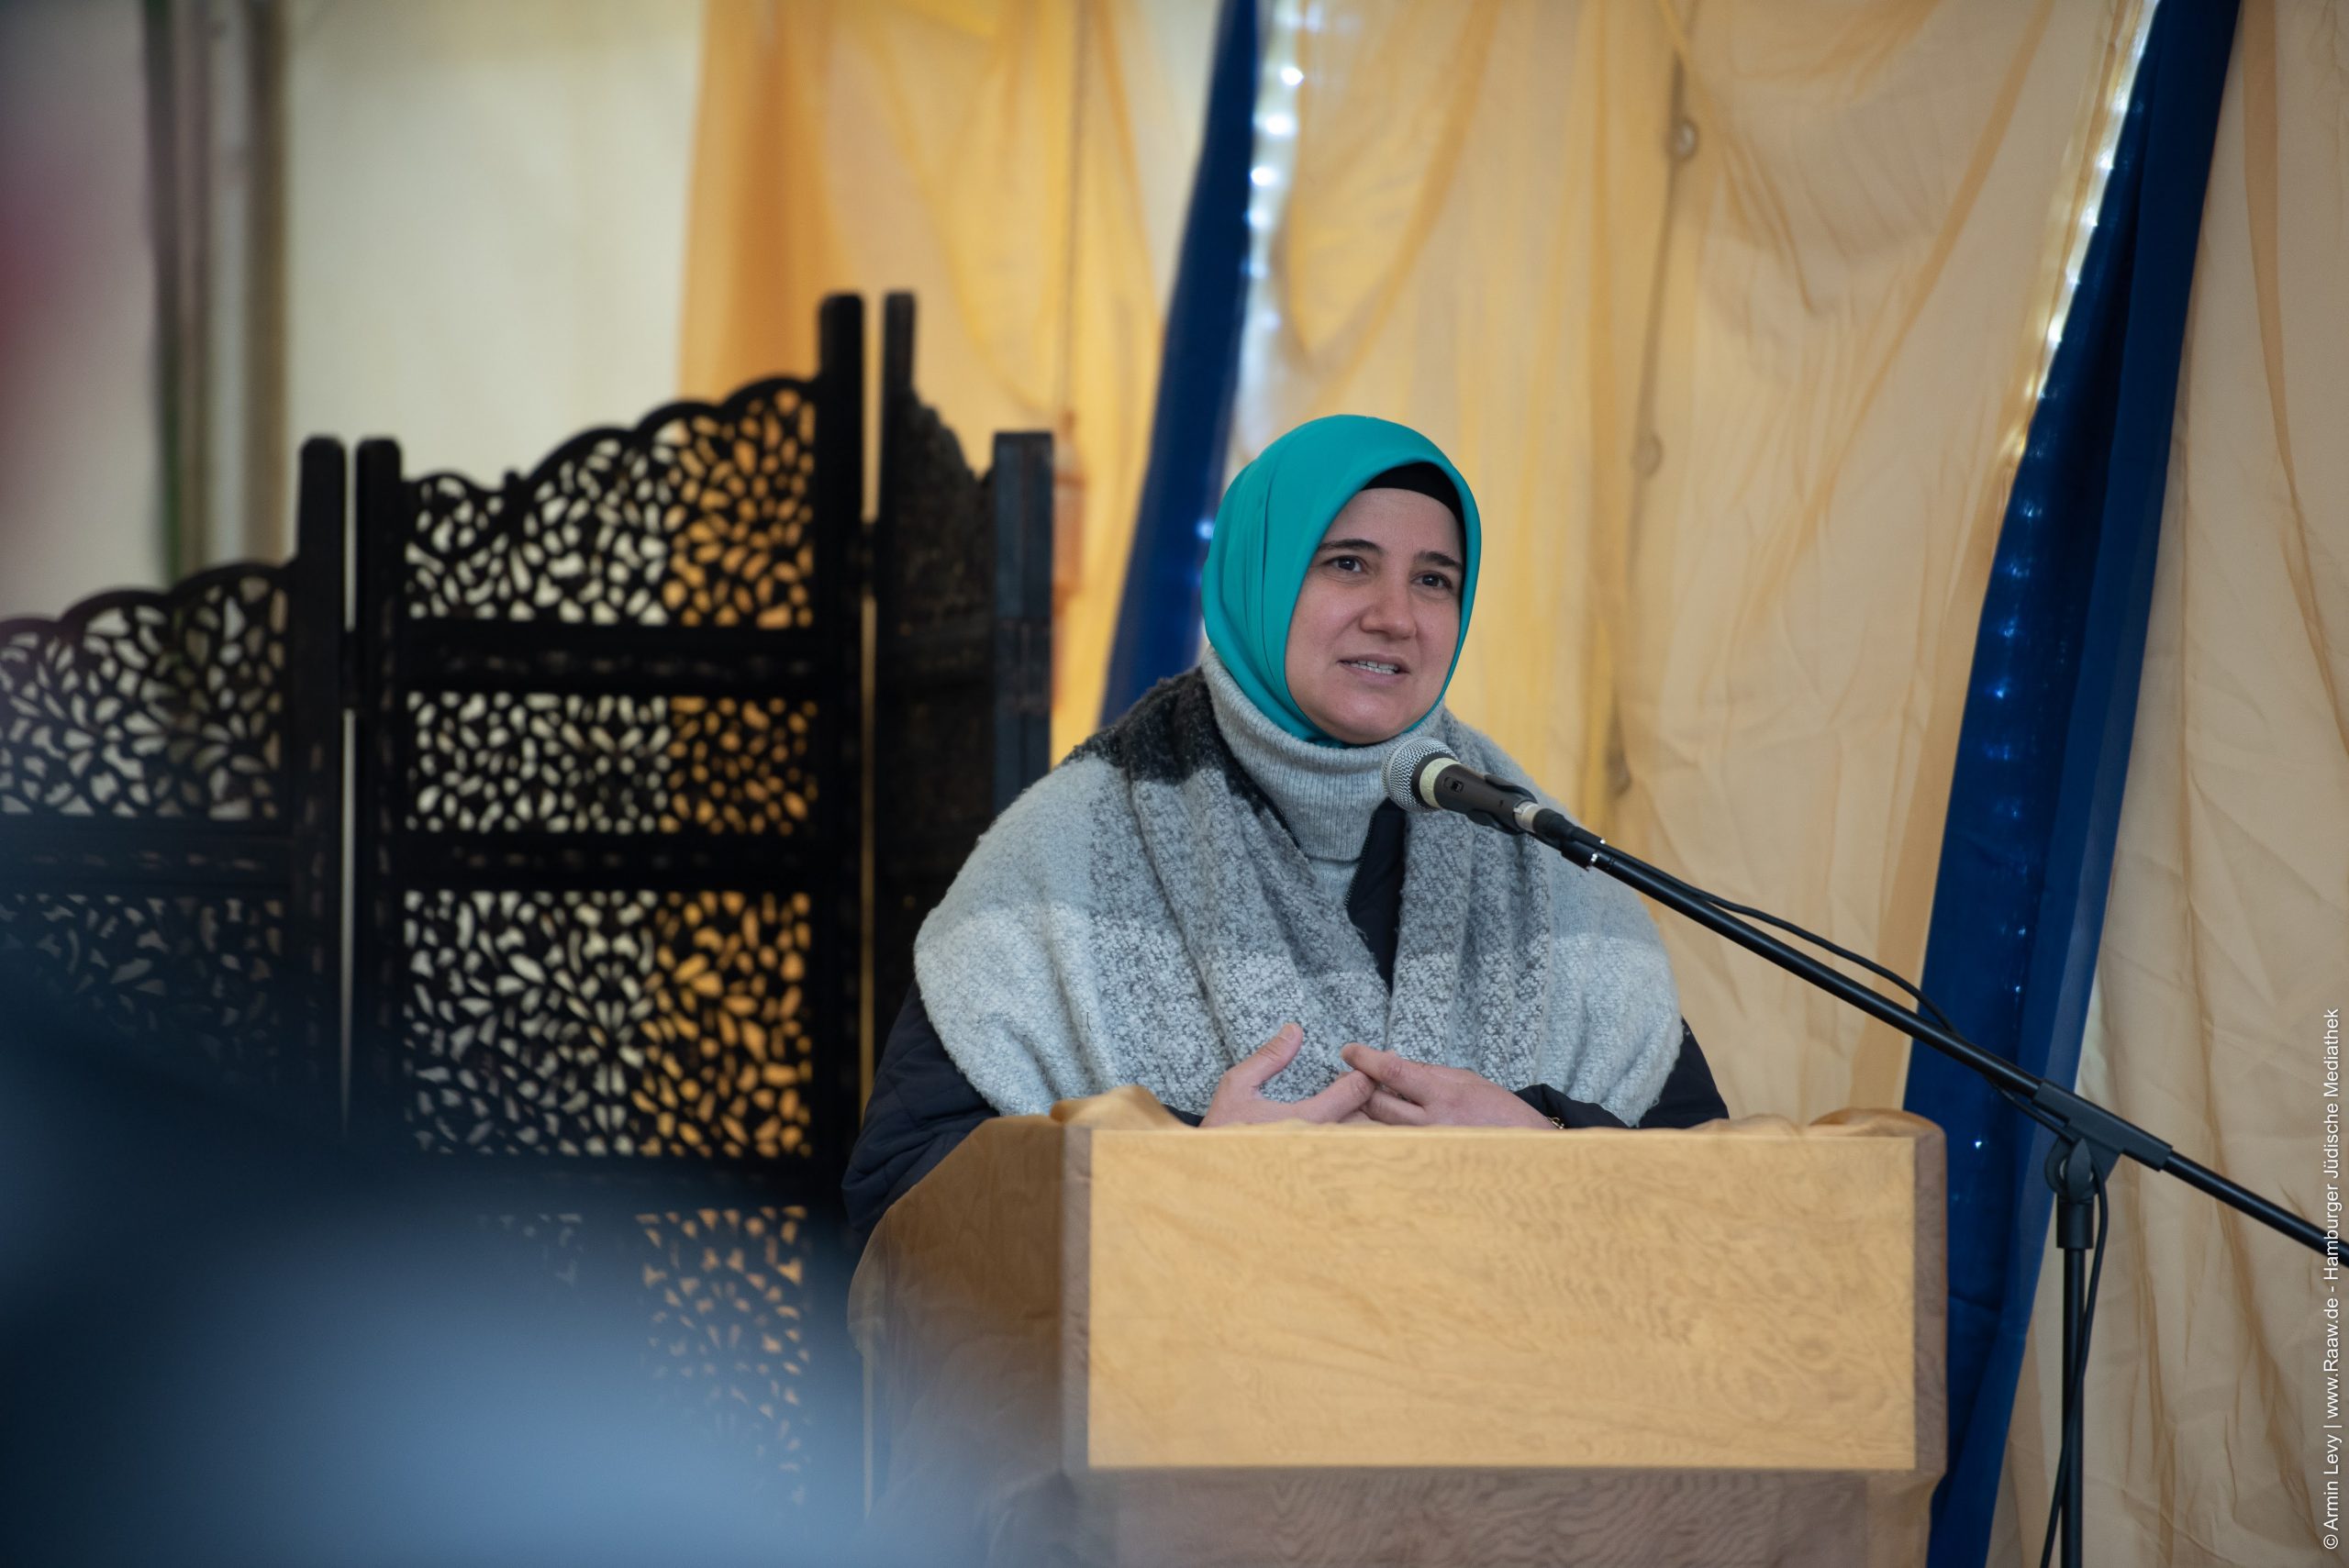 Özlem Nas, stellvertretende Vorsitzende und Antirassismusbeauftragte. | Foto: © Armin Levy